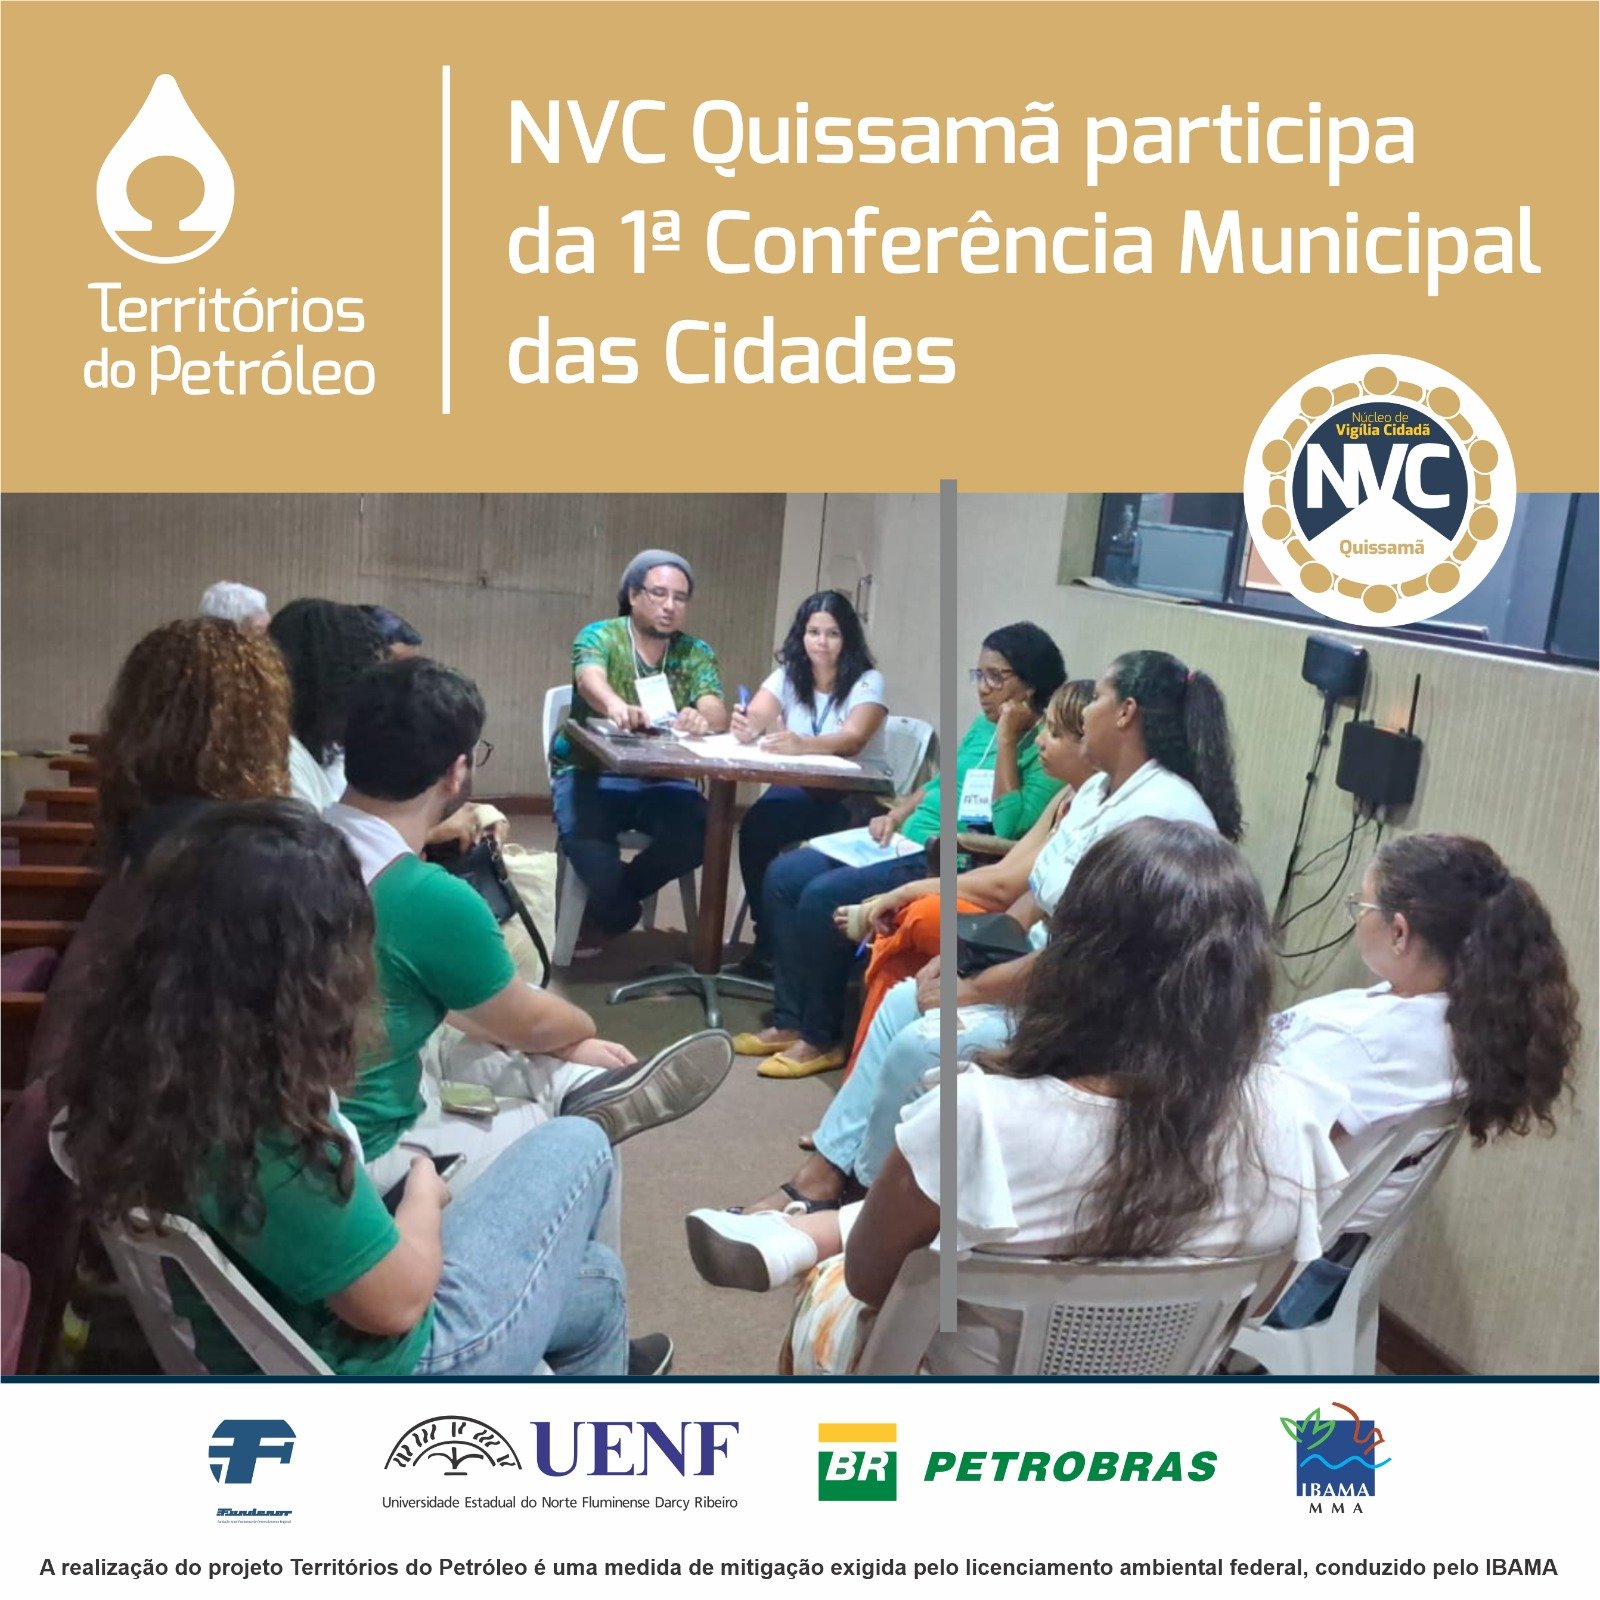 NVC de Quissamã participa da 1ª Conferência Municipal das Cidades